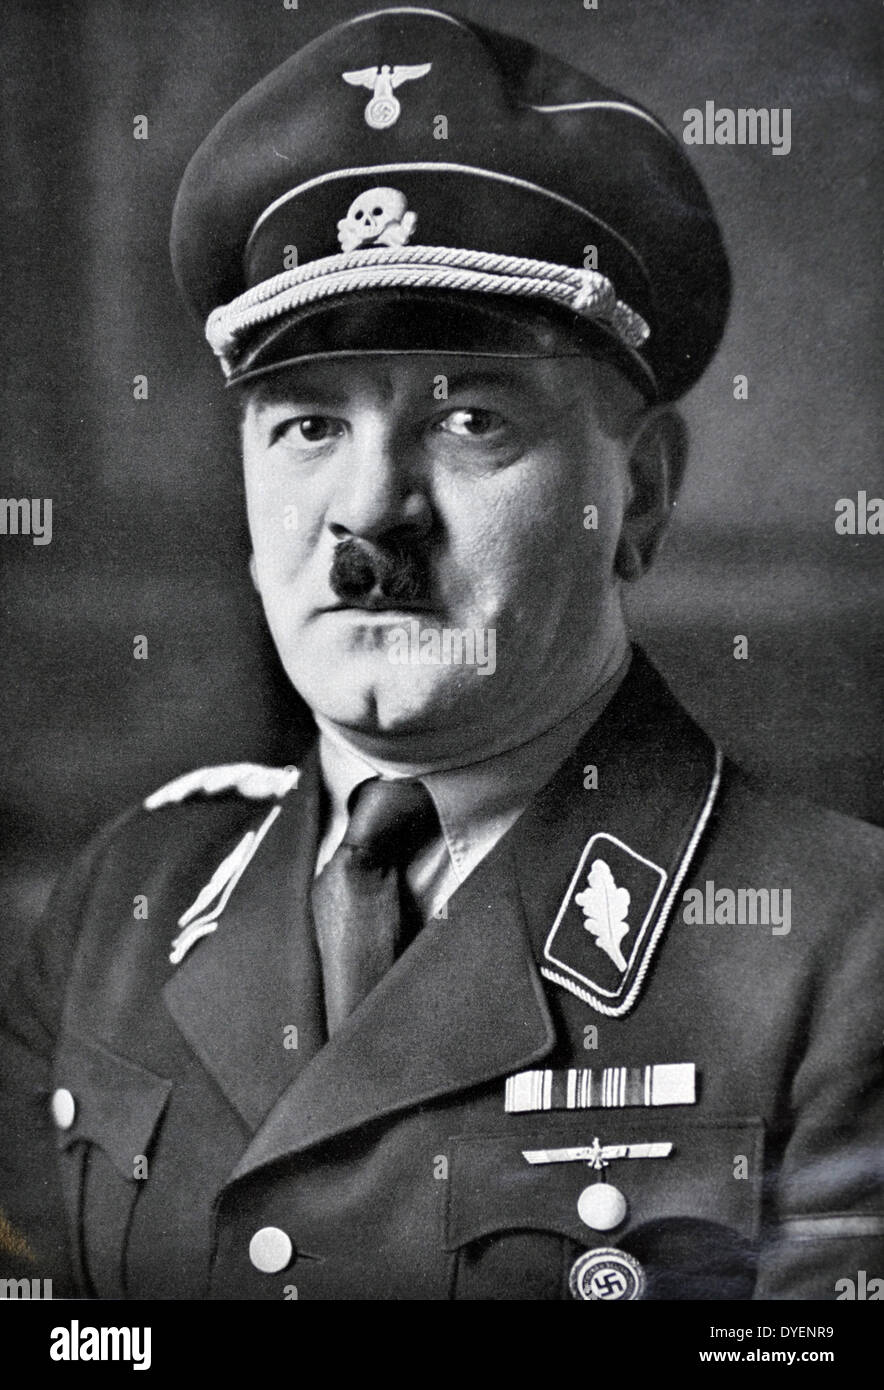 Julius Schreck (Luglio 13, 1898 Monaco di Baviera - Maggio 16, 1936) è stato un primo membro del partito nazista e anche il primo comandante della Schutzstaffel (SS). Foto Stock